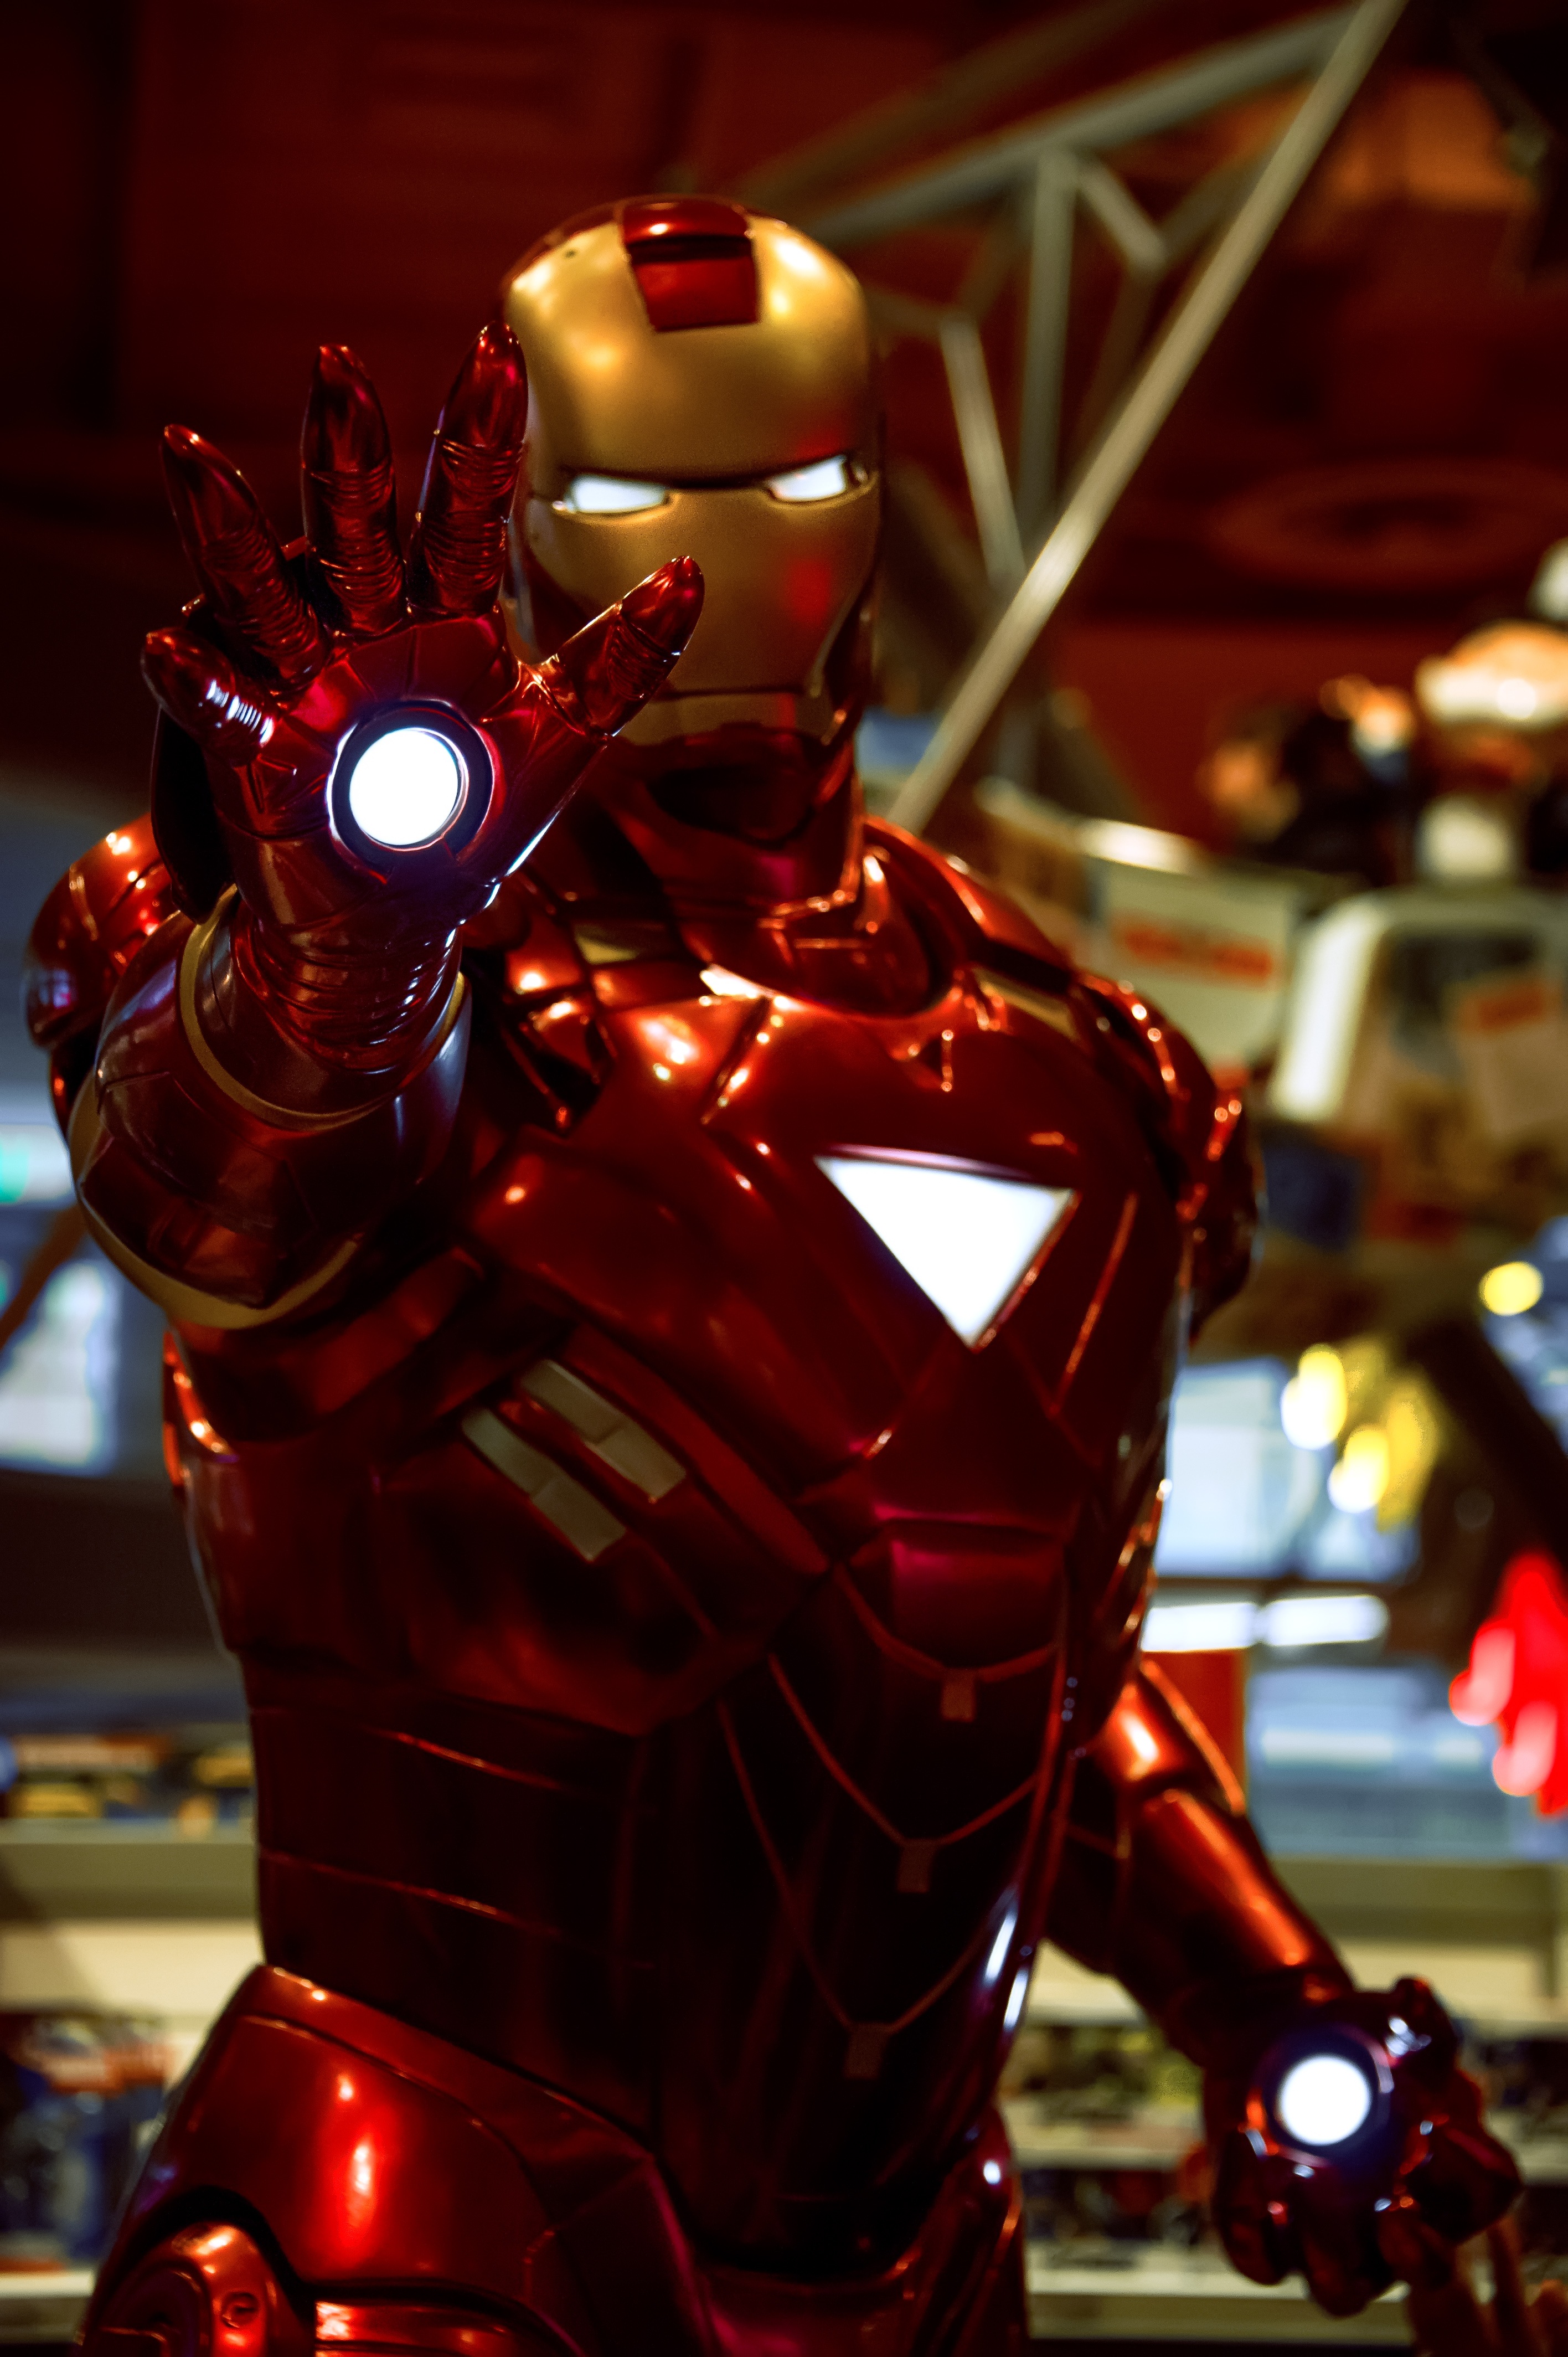 Iron Man statue, ironman, hero, comic, focus on foreground, illuminated